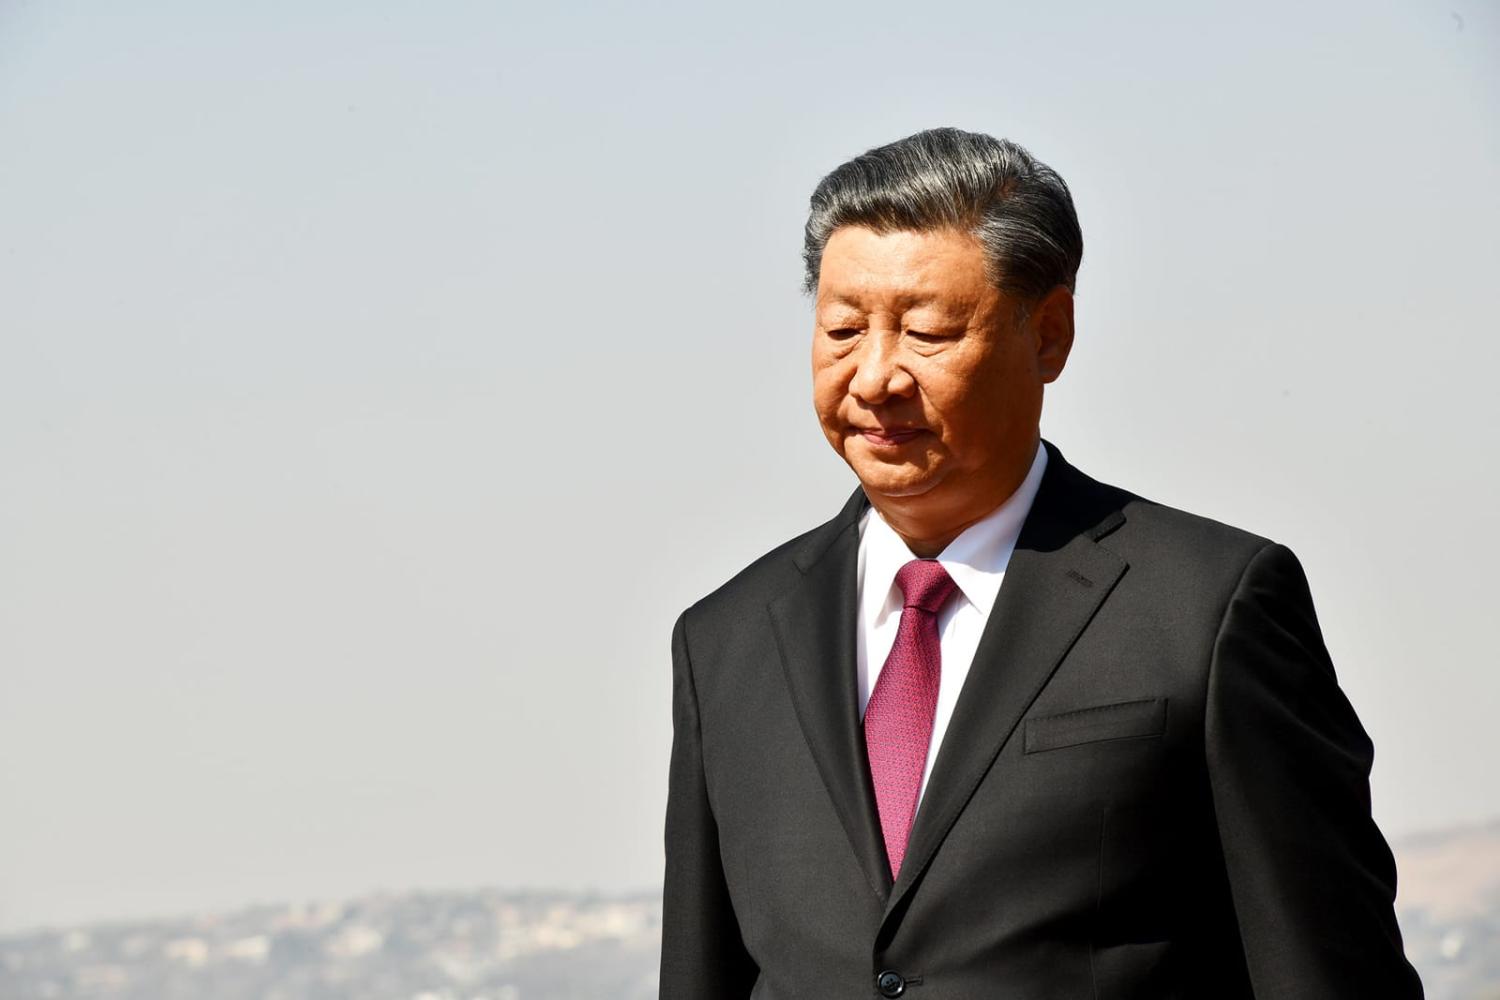 اقتصاد بندزده چینی!/ برنامه شی جین پینگ برای گریز از رکود 2